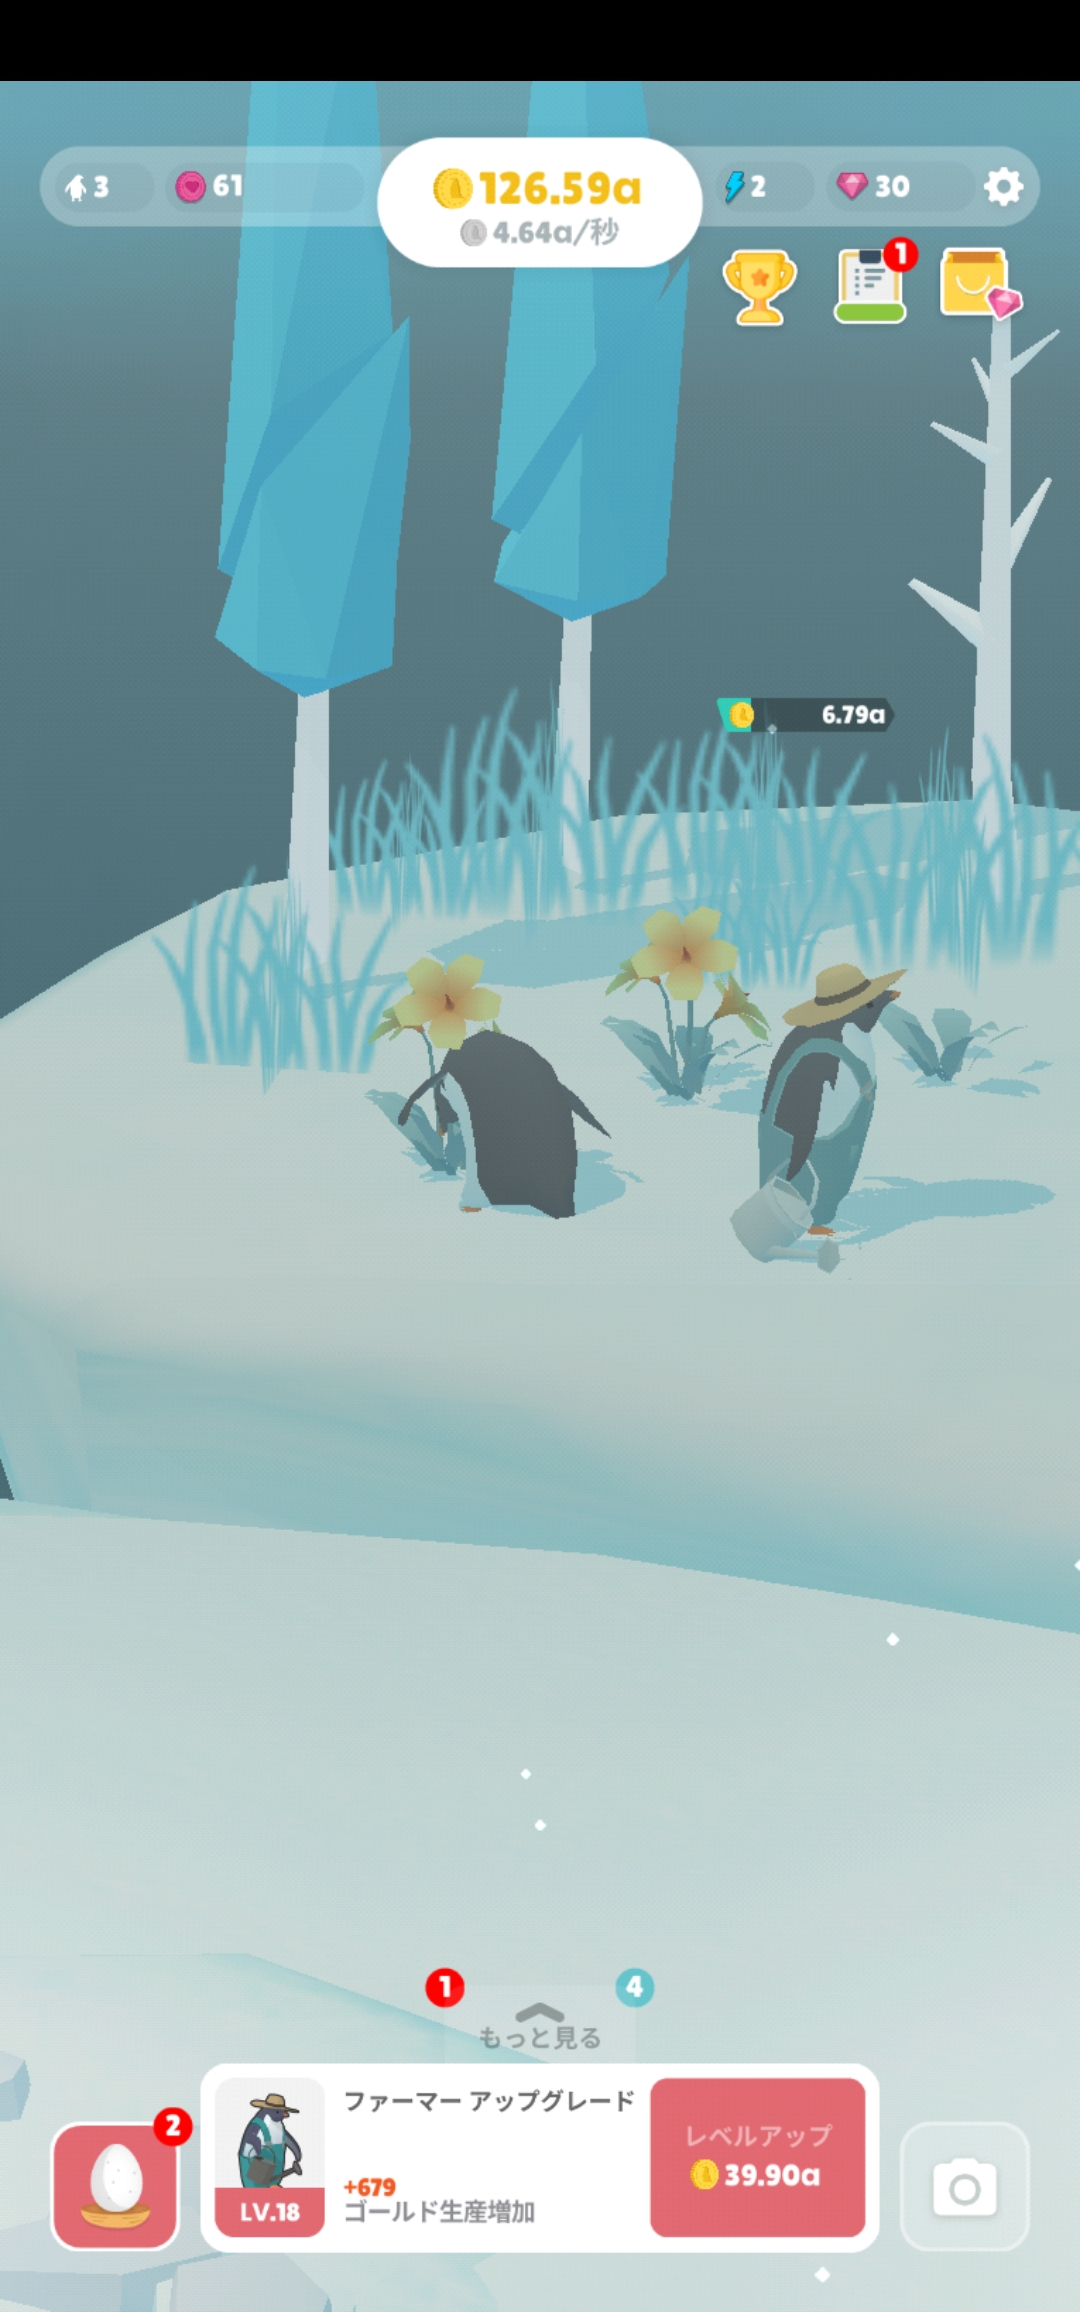 ペンギンが棲む氷の島を充実させていく箱庭型のシミュレーションゲーム ペンギンの島 Dime アットダイム